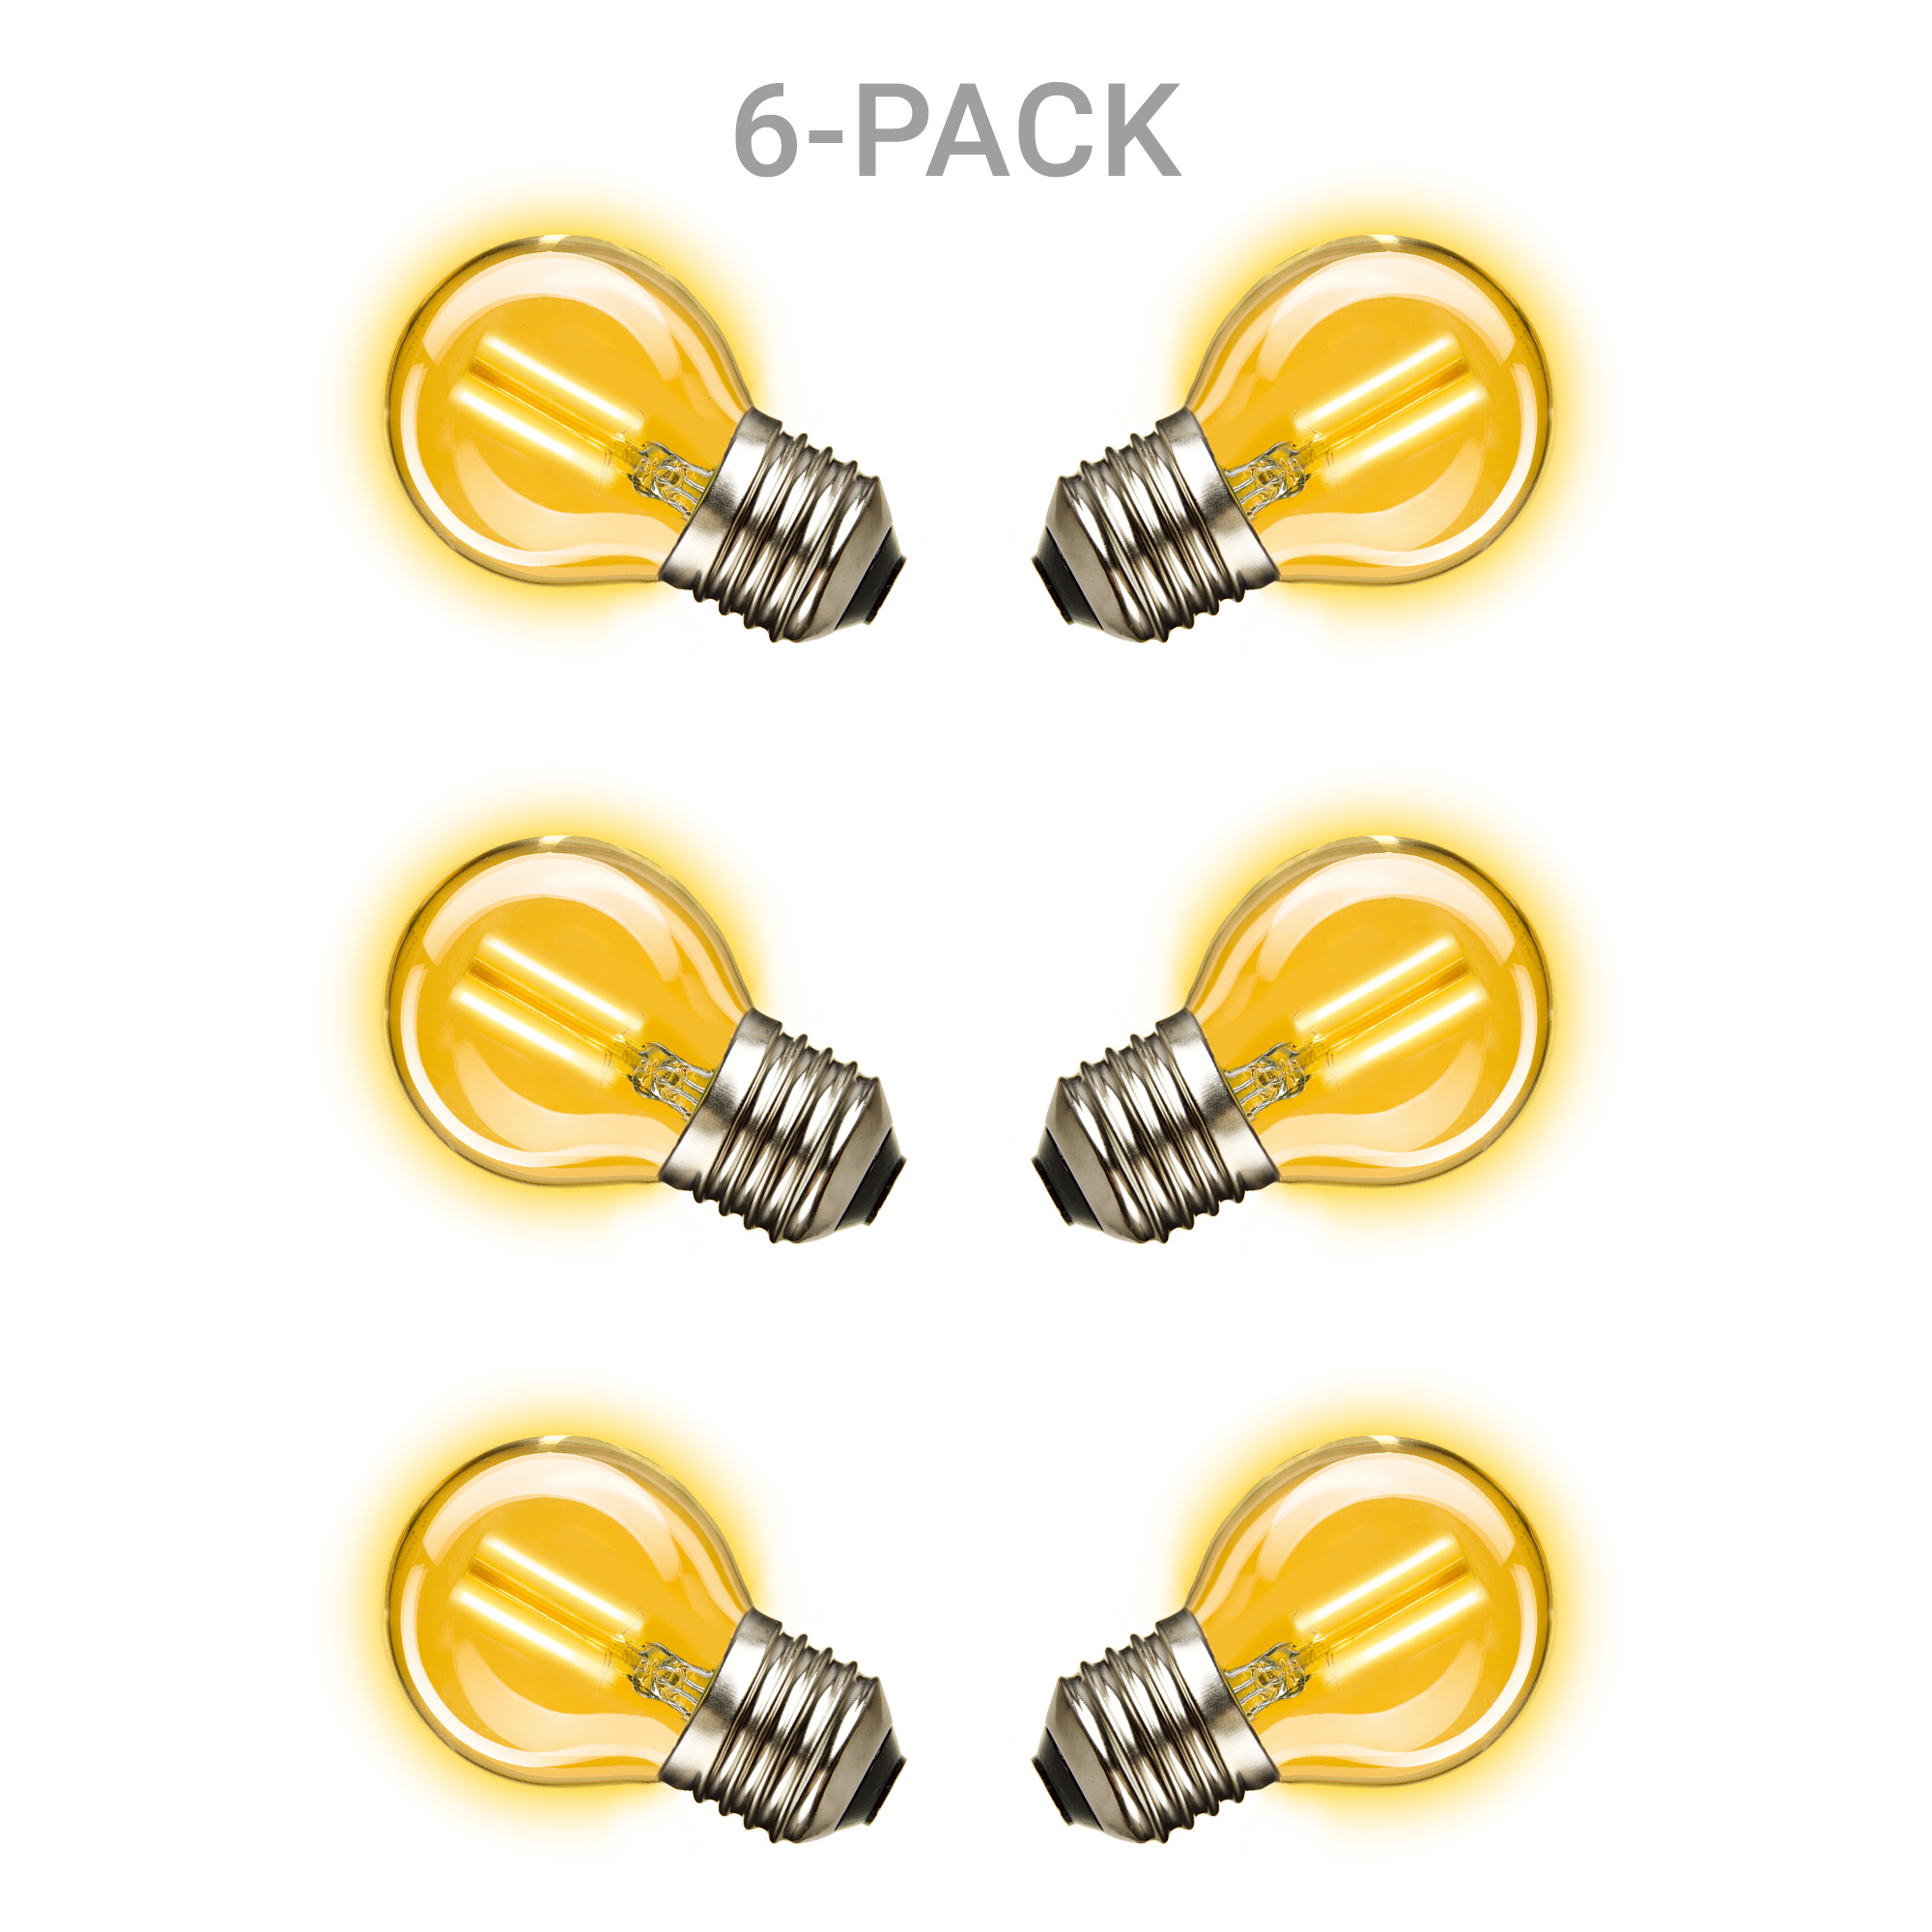 6-pack Mini Gold Ledlamp